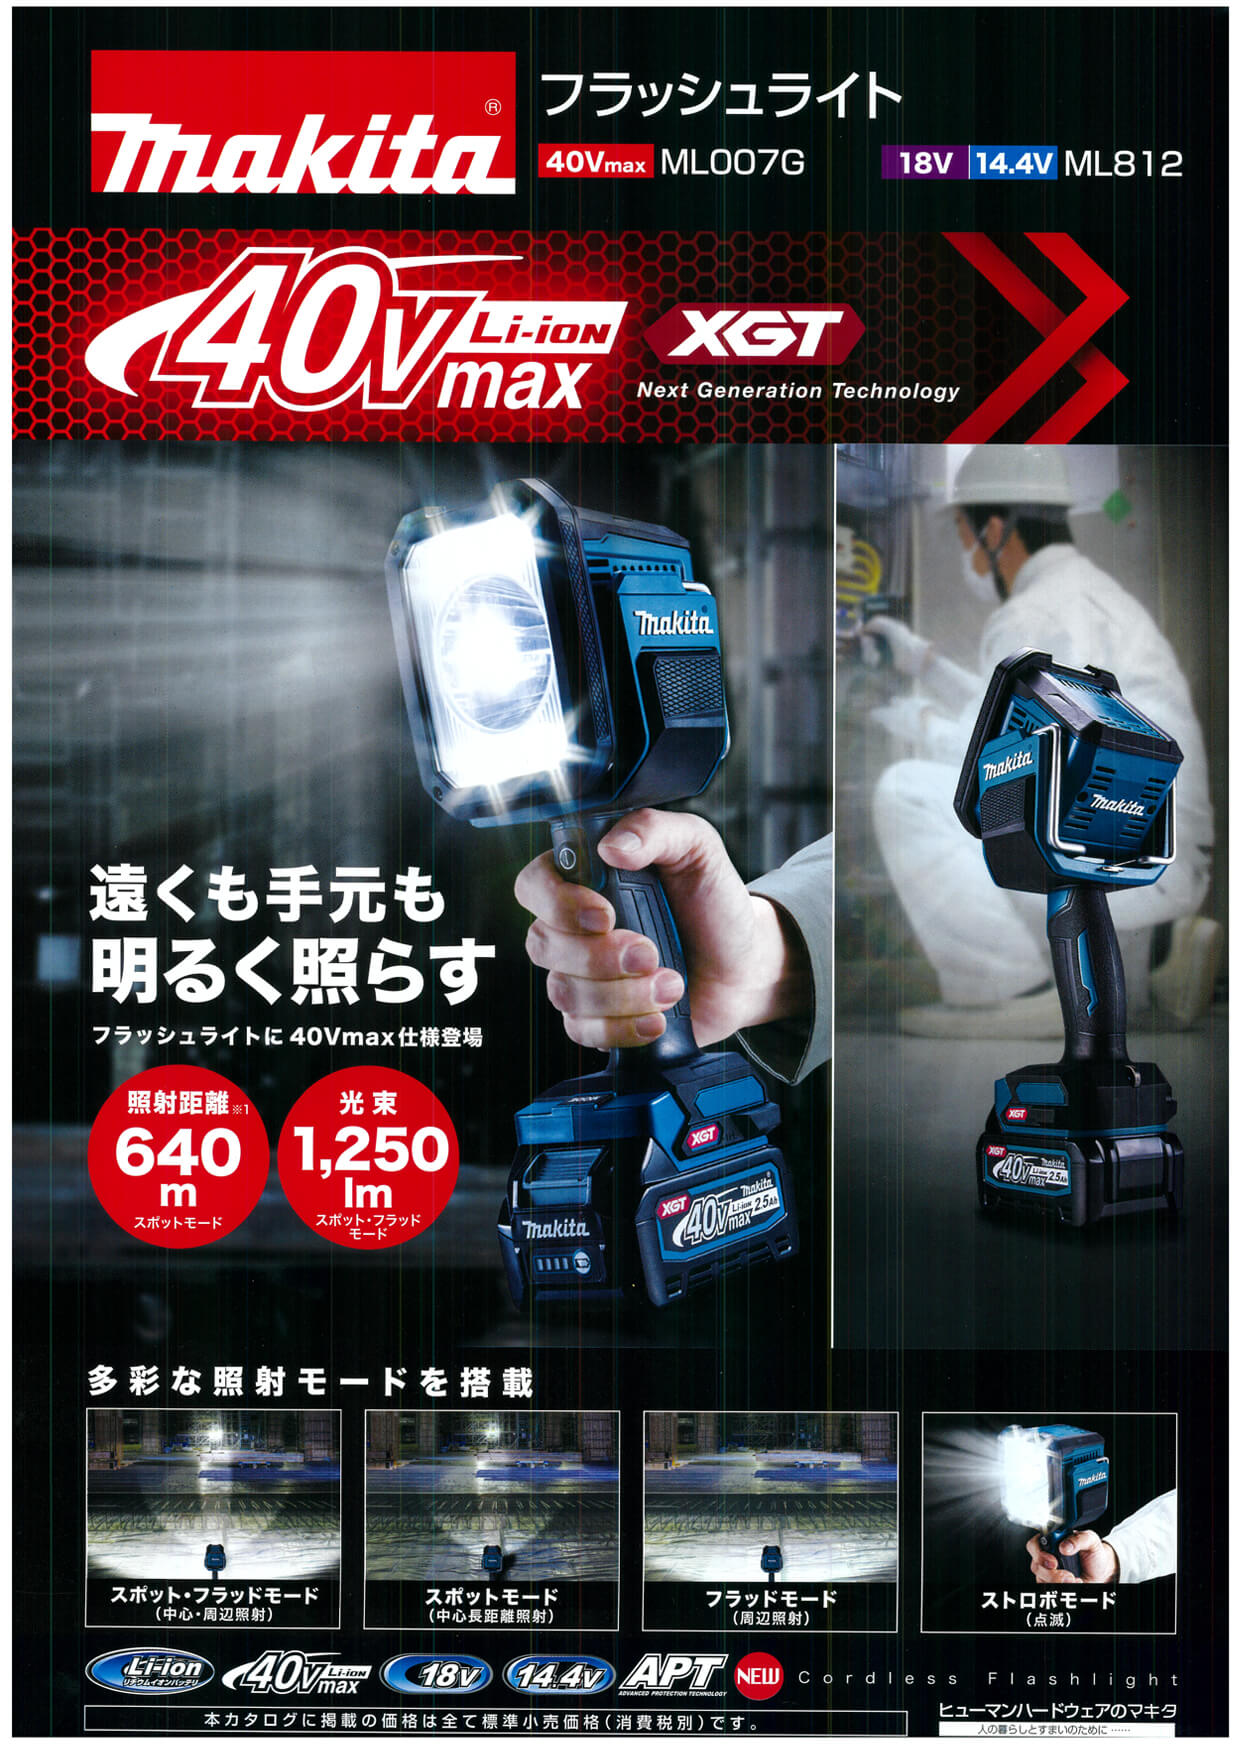 マキタ ML007G 40Vmax充電式フラッシュライト ウエダ金物【公式サイト】